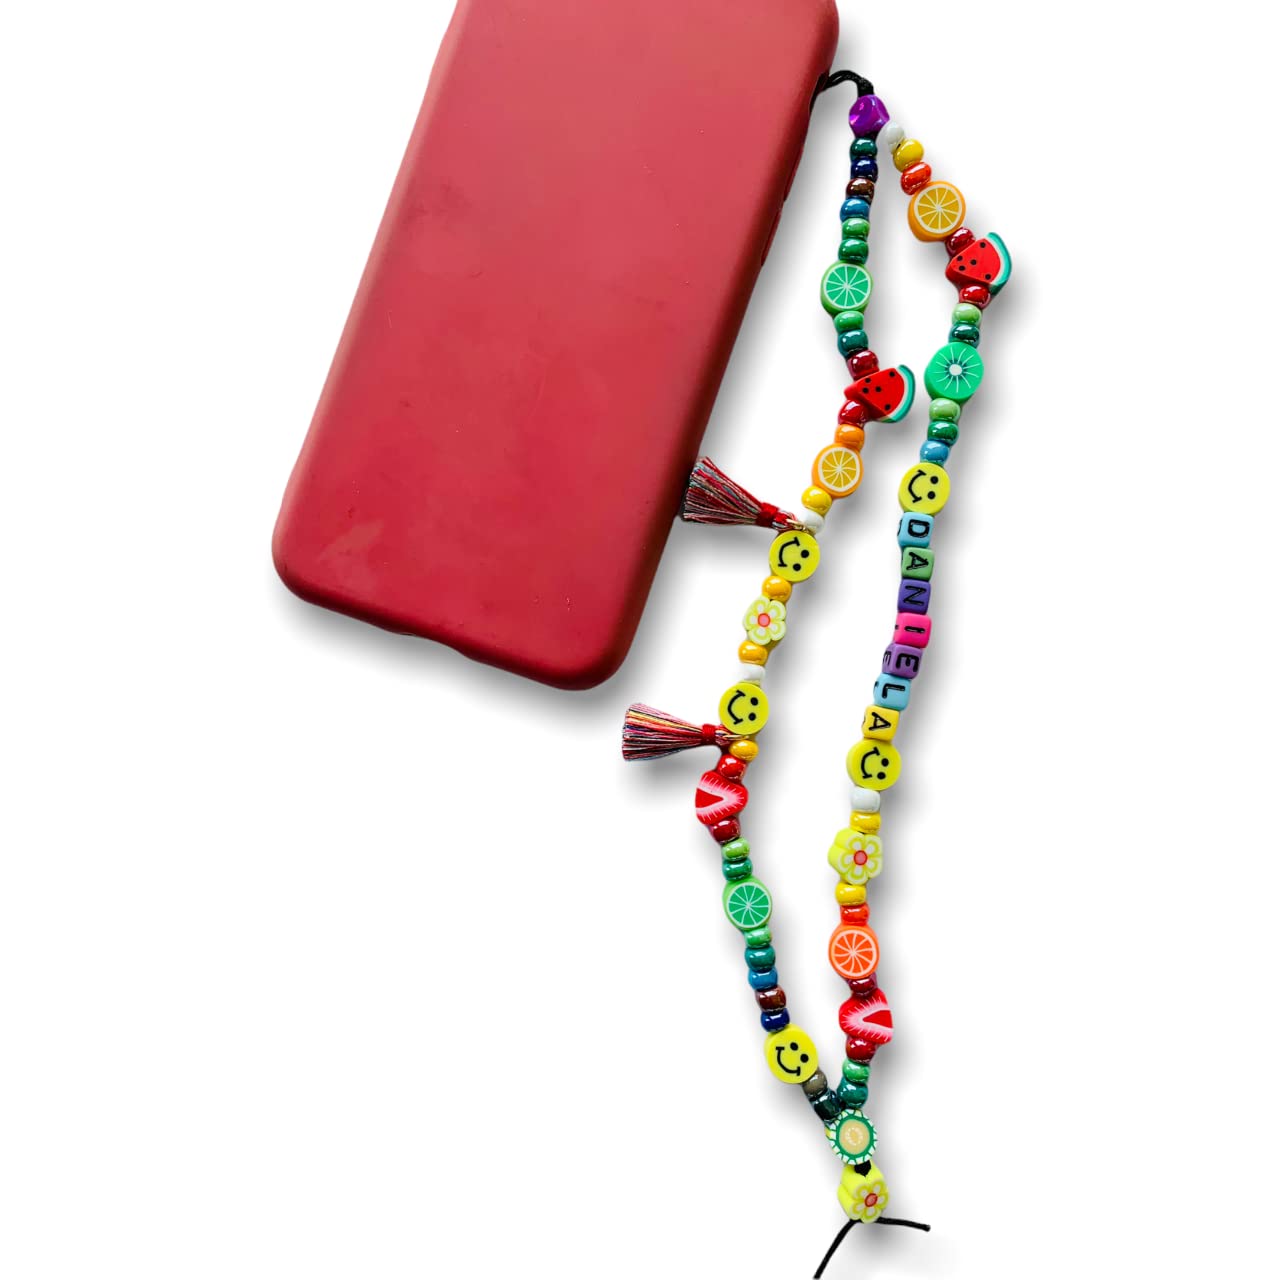 Collana o laccetto per telefono fatta a mano con perline di vetro originale di Boemia modello Watermelon personalizzato con nome. Gioiello o charm per il tuo telefono